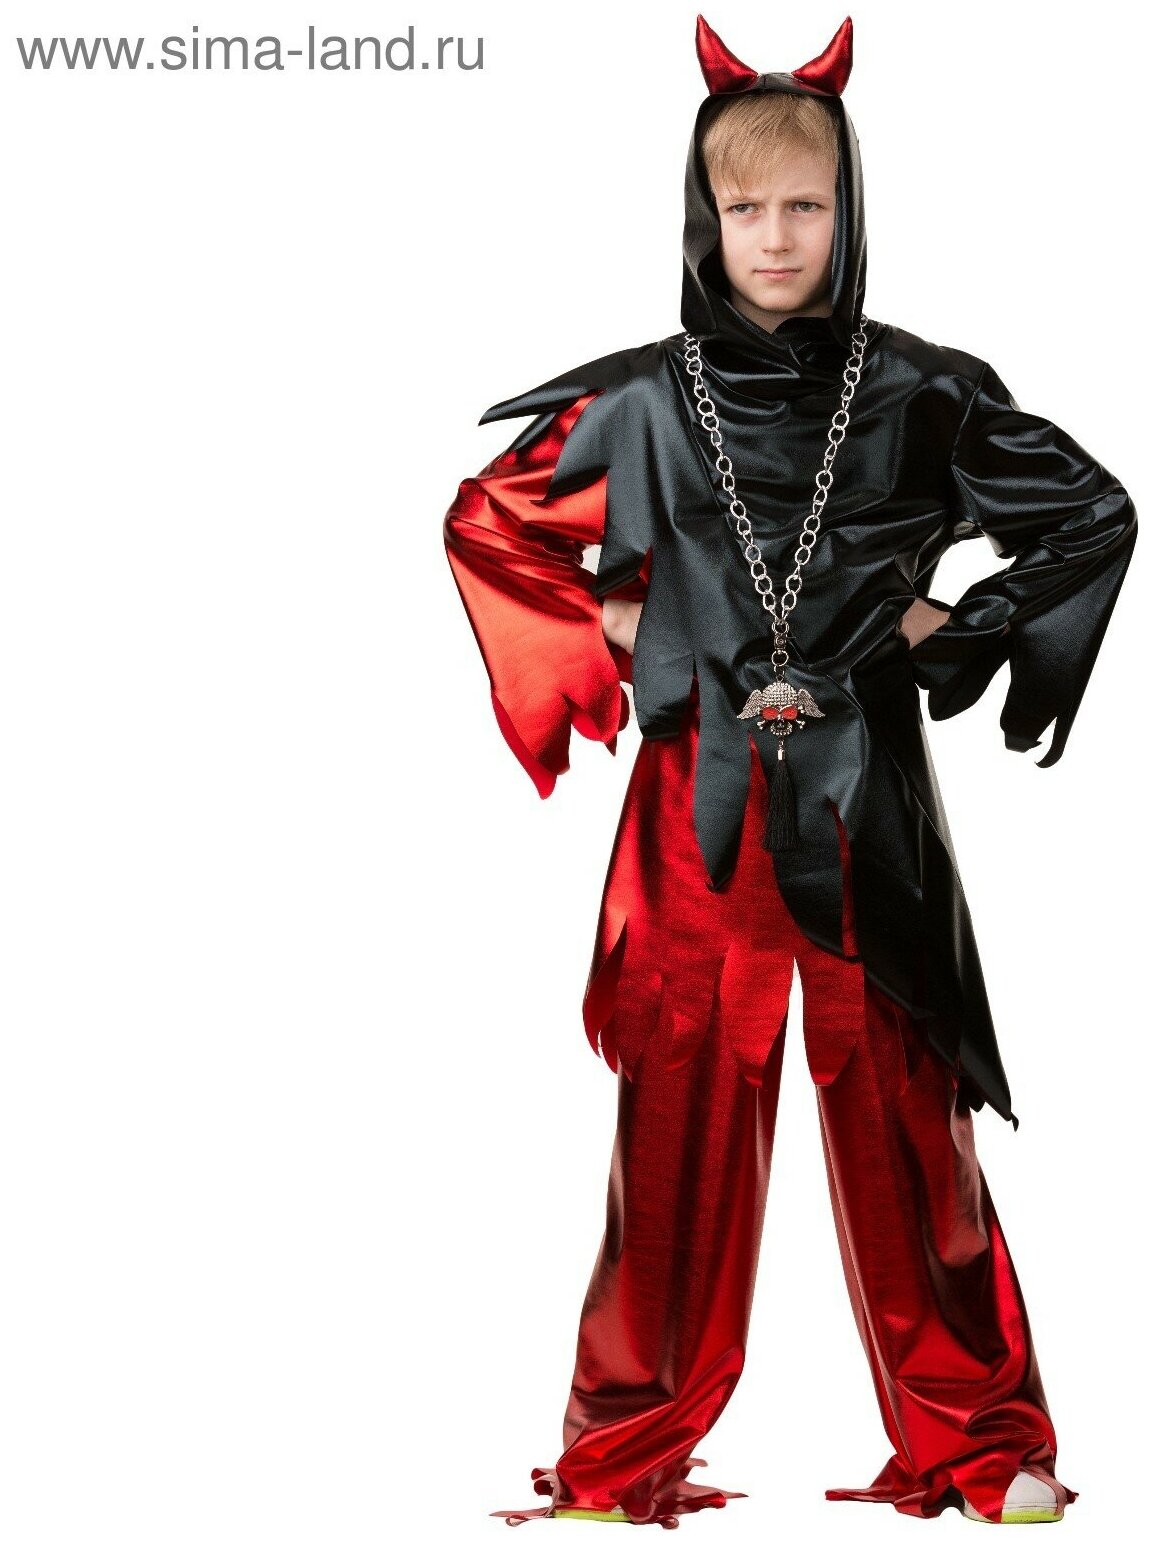 Карнавальный костюм "Демон", куртка, брюки, ободок, р. 34, рост 140 см